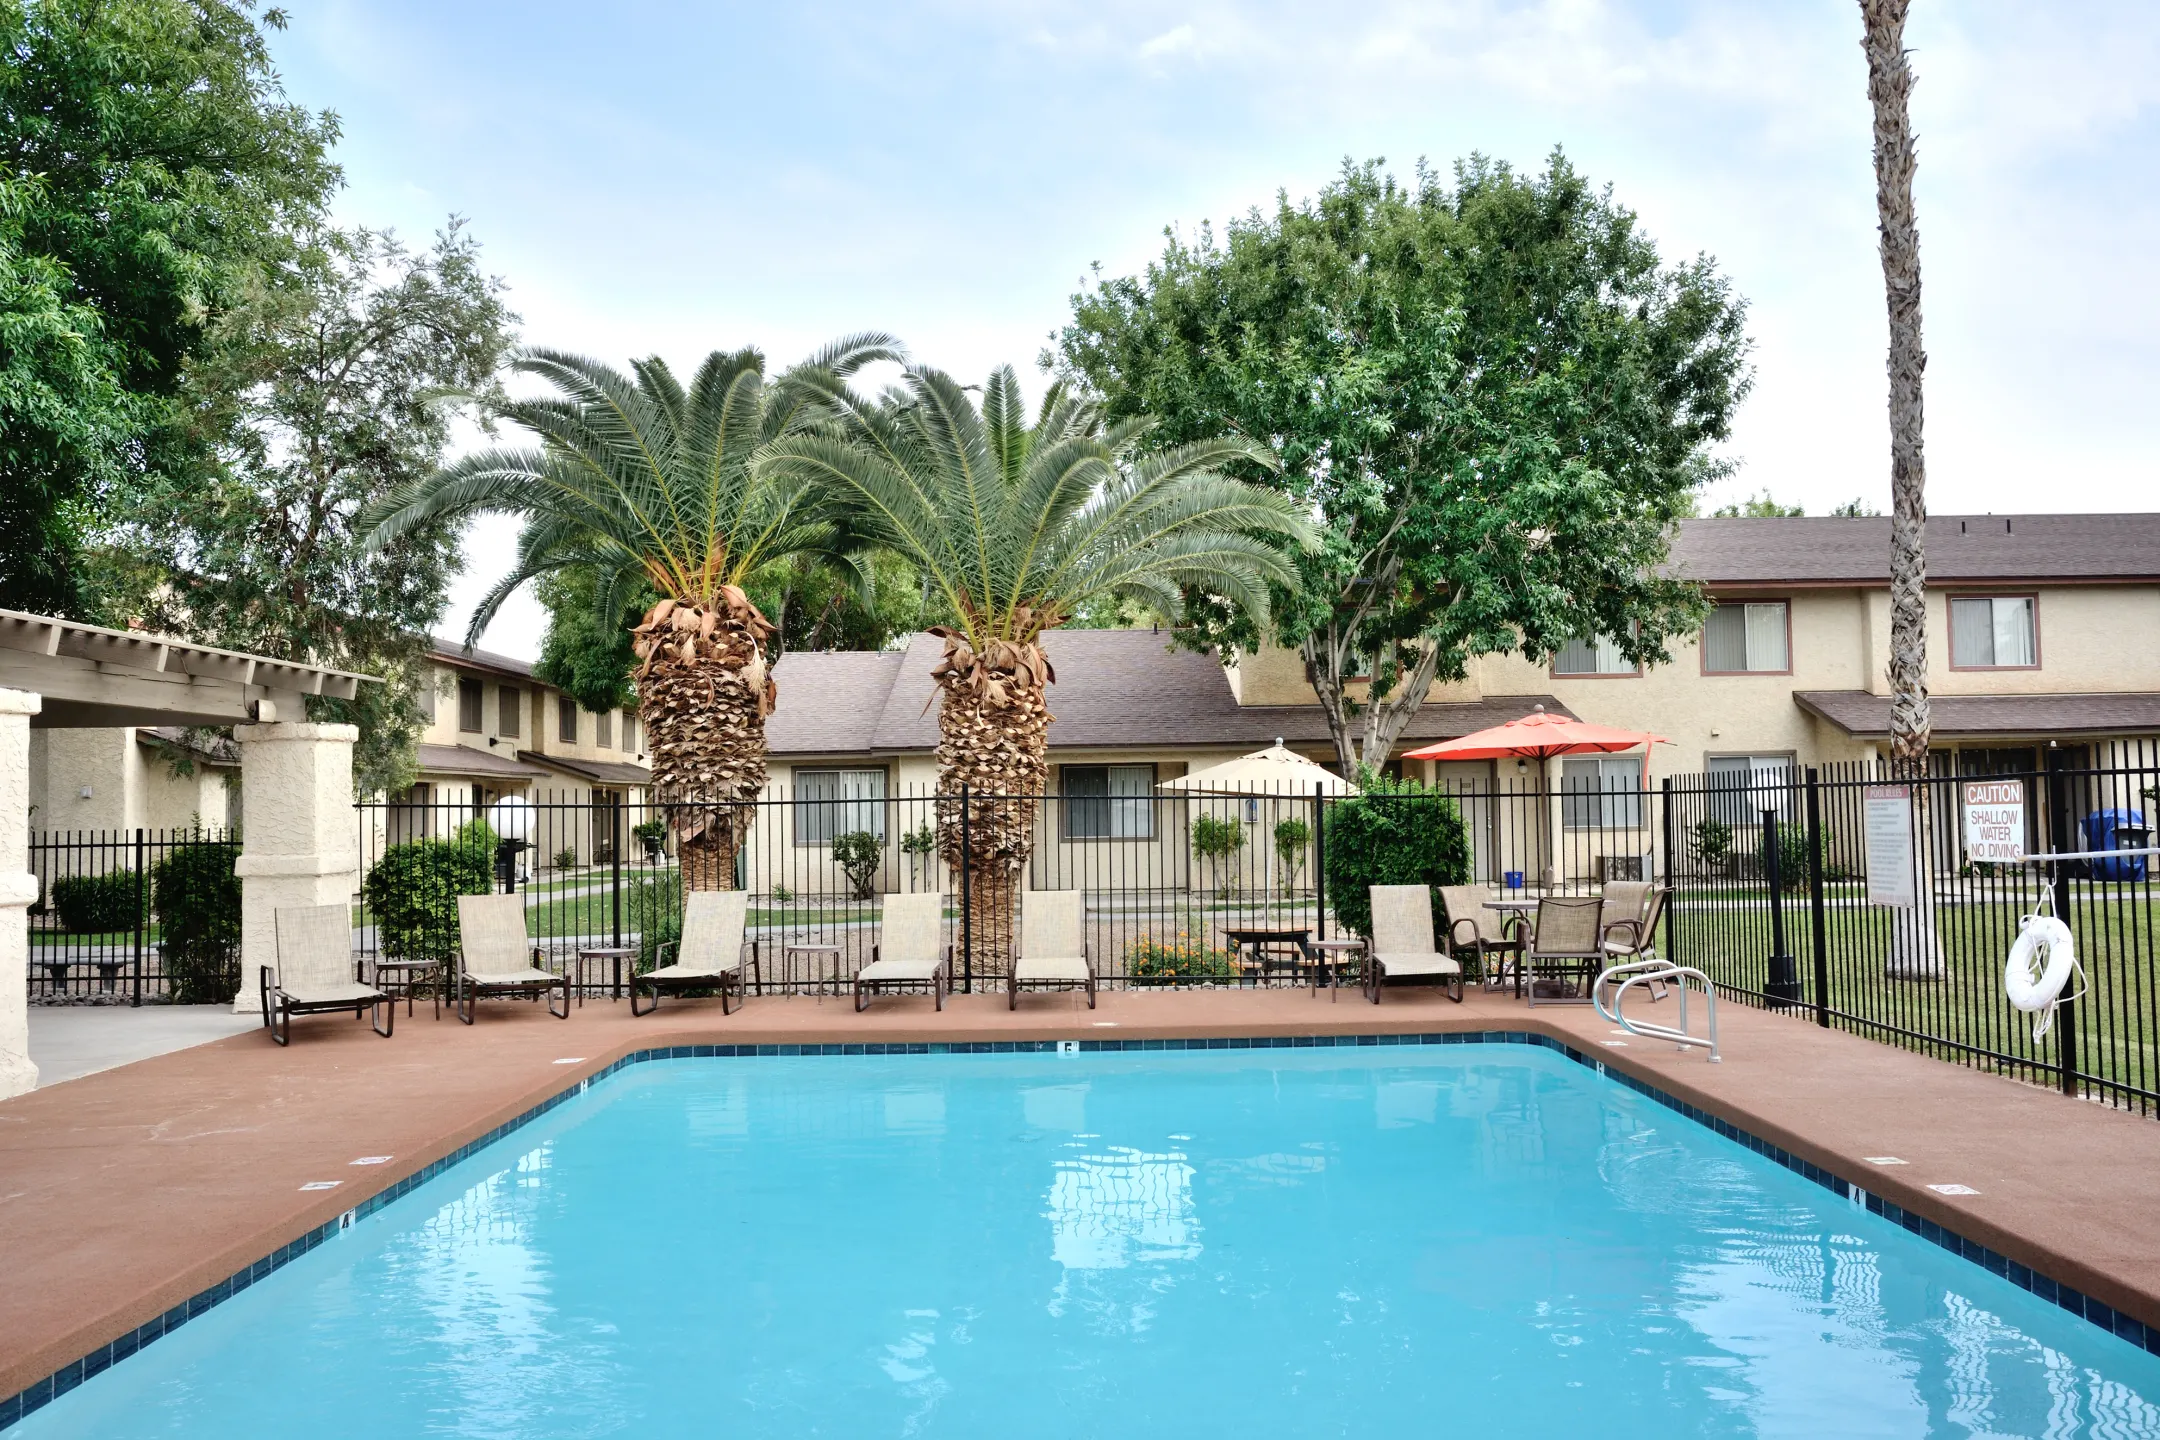 Pool - Camelot Apartments - AZ - Yuma, AZ